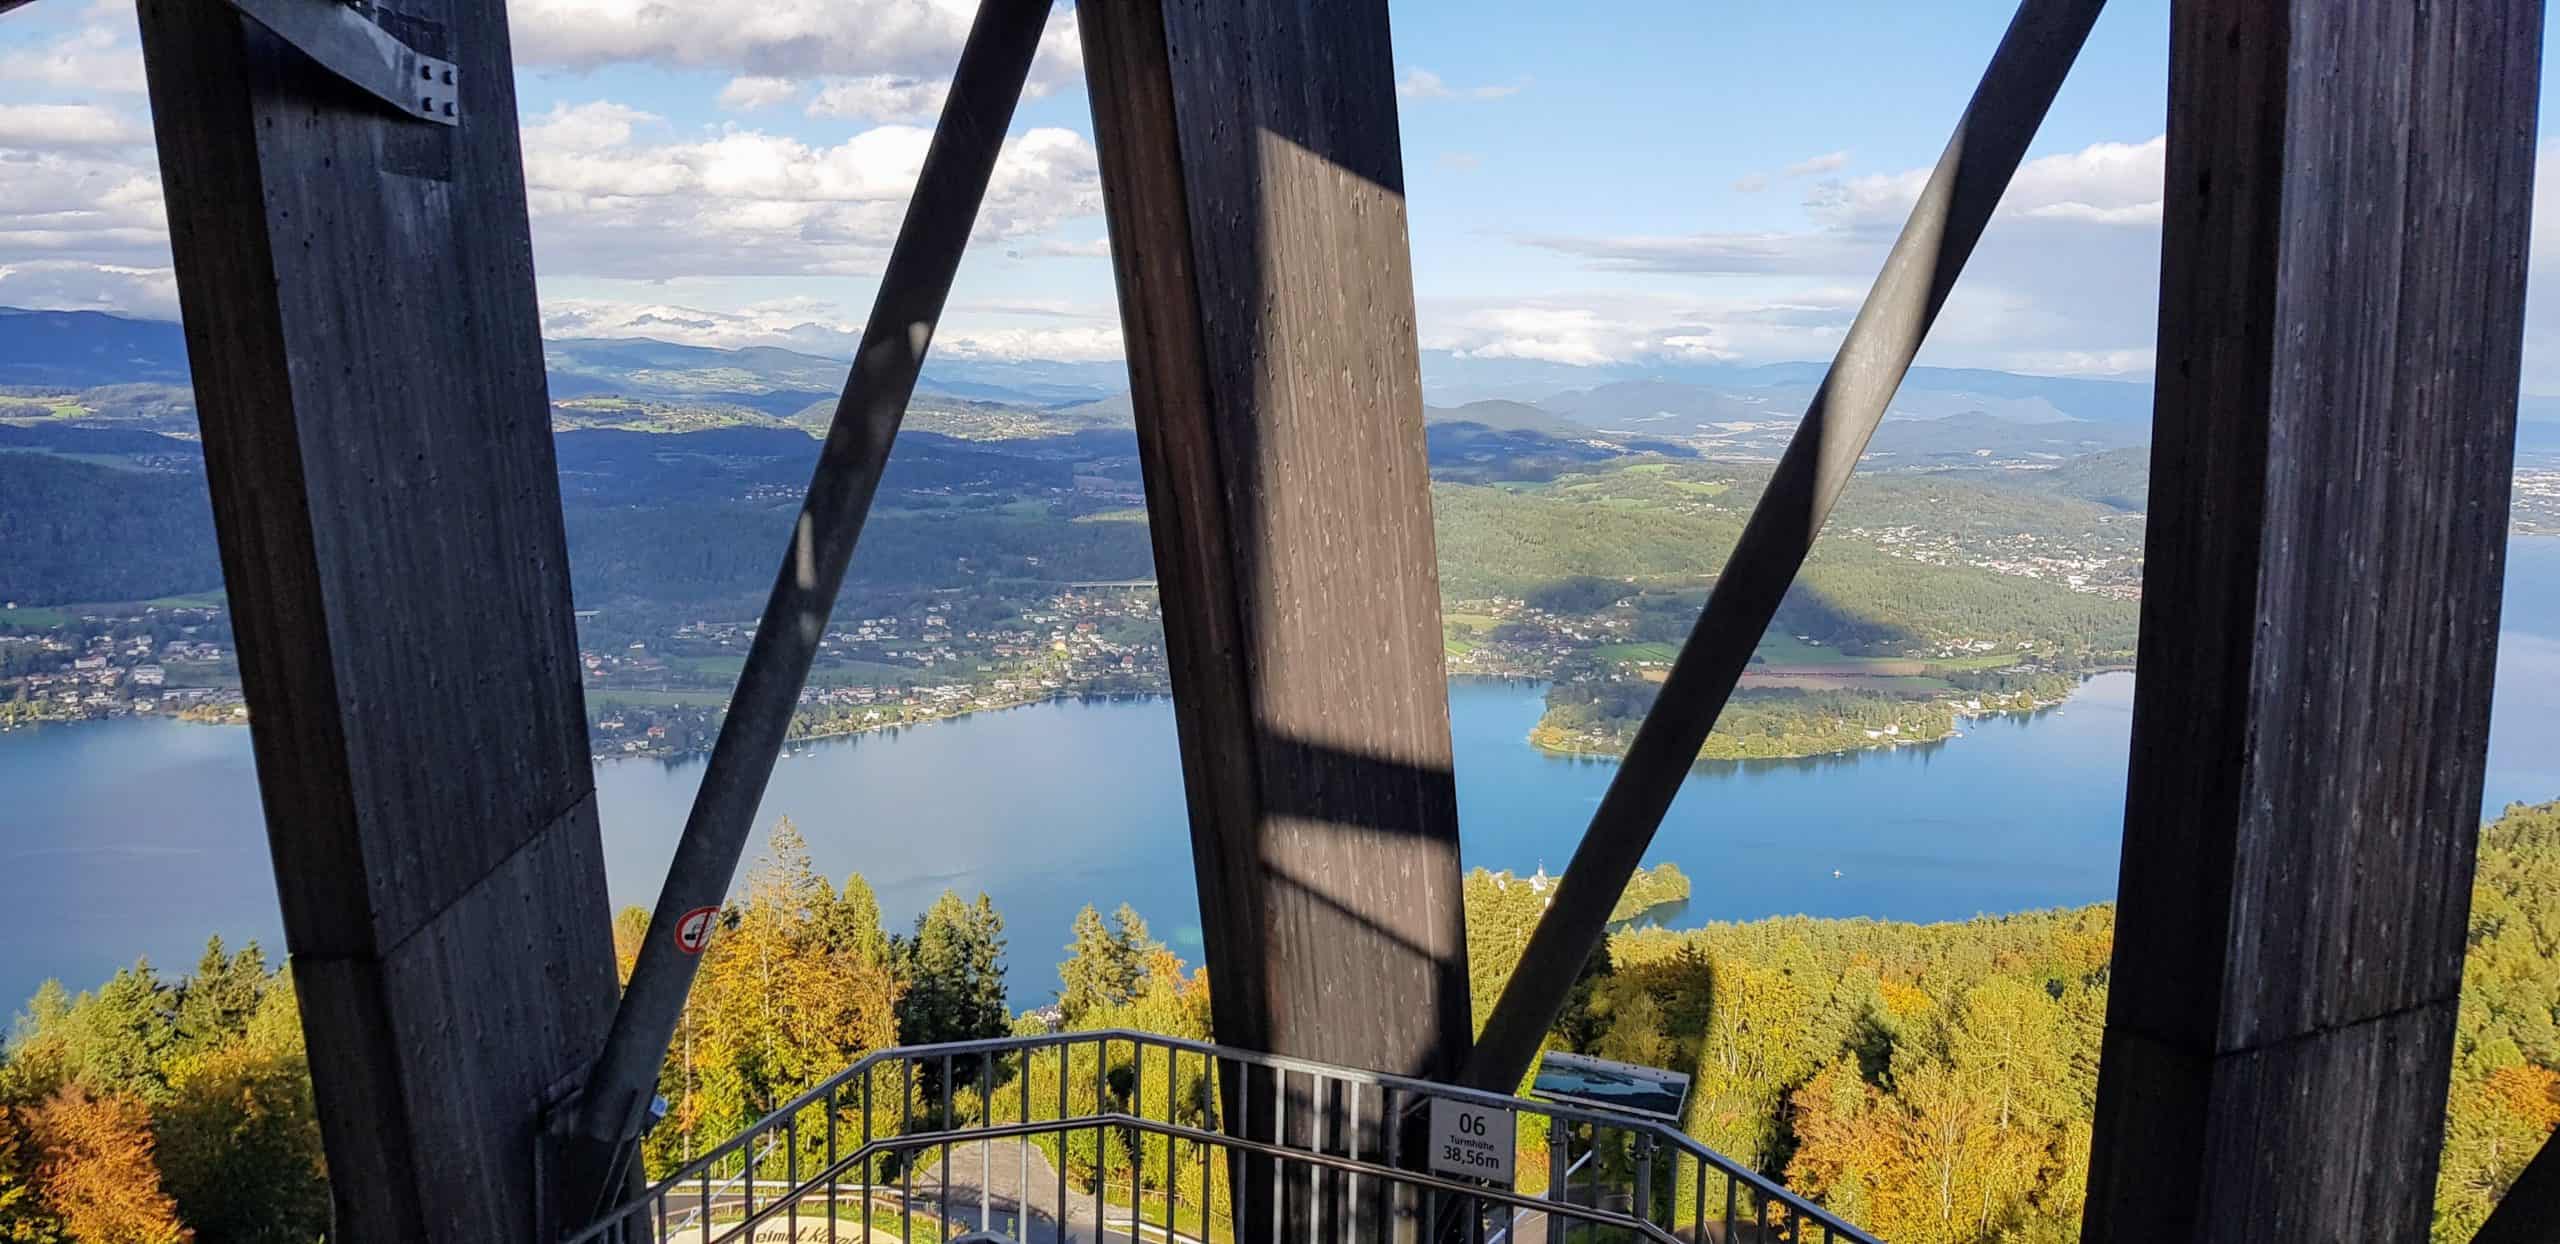 Aufgang Treppe Pyramidenkogel. Holzkonstruktion im Inneren des Ausflugsziels mit Blick auf Wörthersee. Sehenswürdigkeit in Österreich.